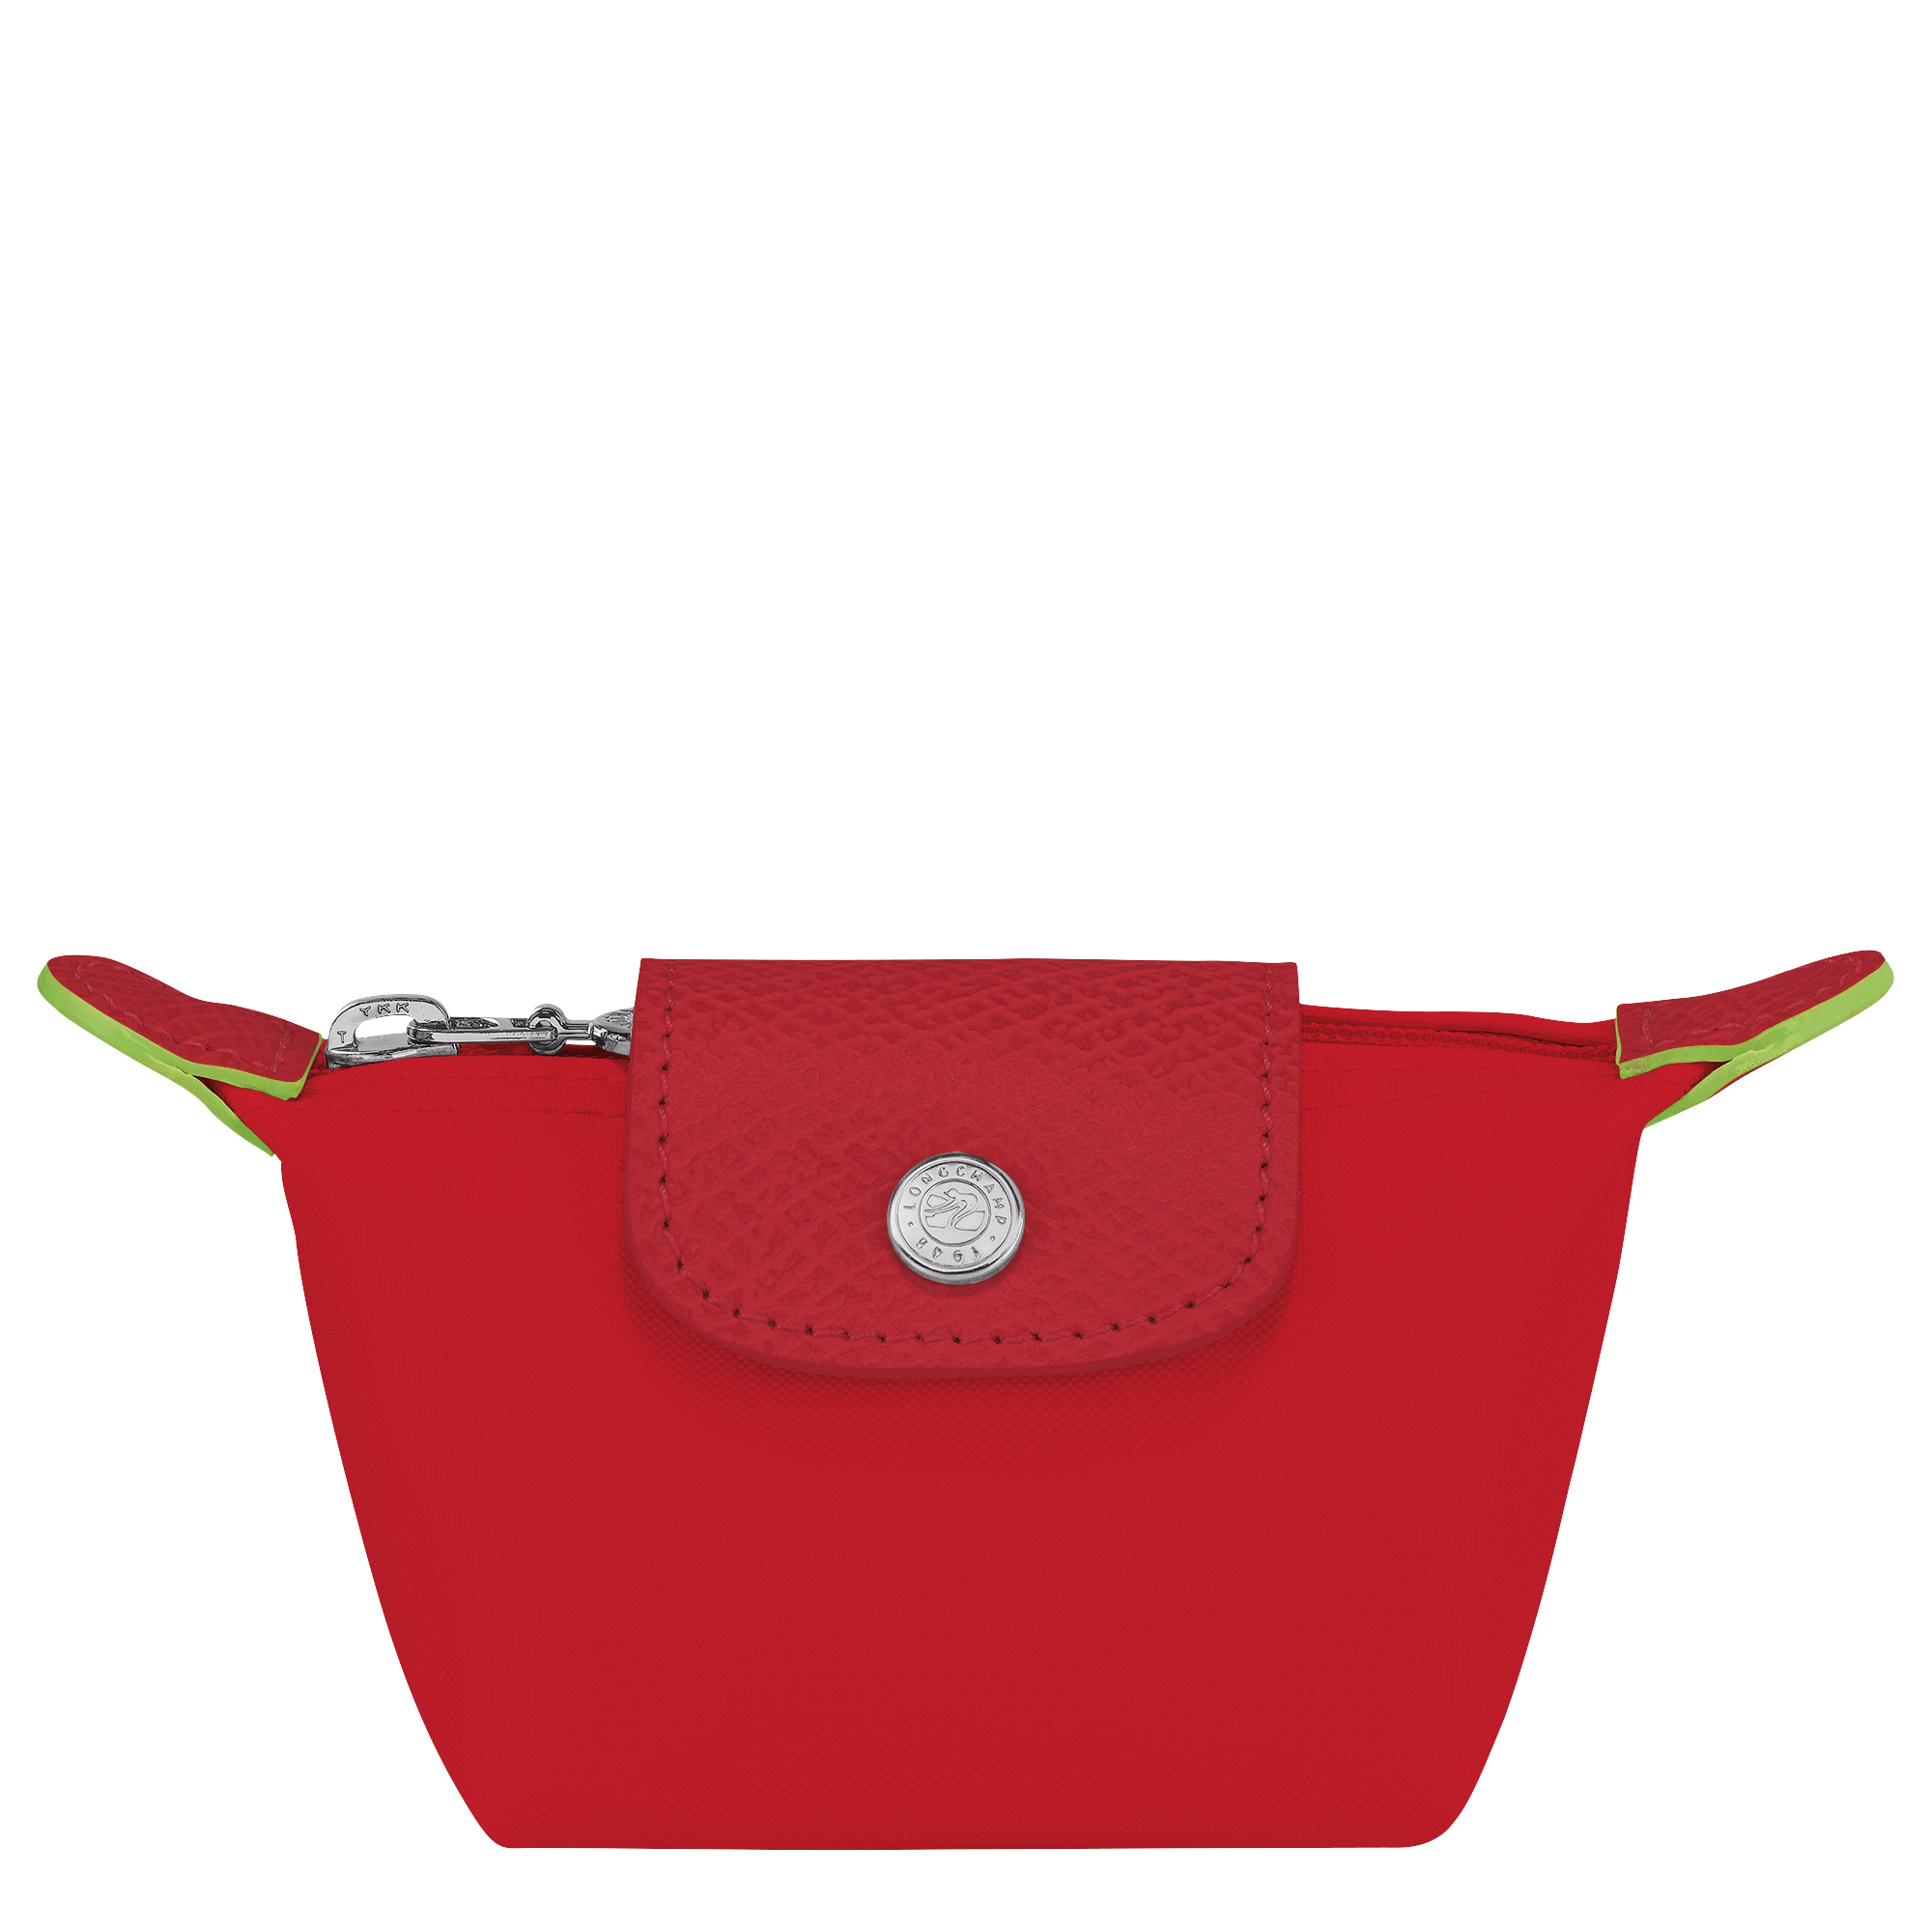 Le Pliage Green Portemonnaie, Tomato